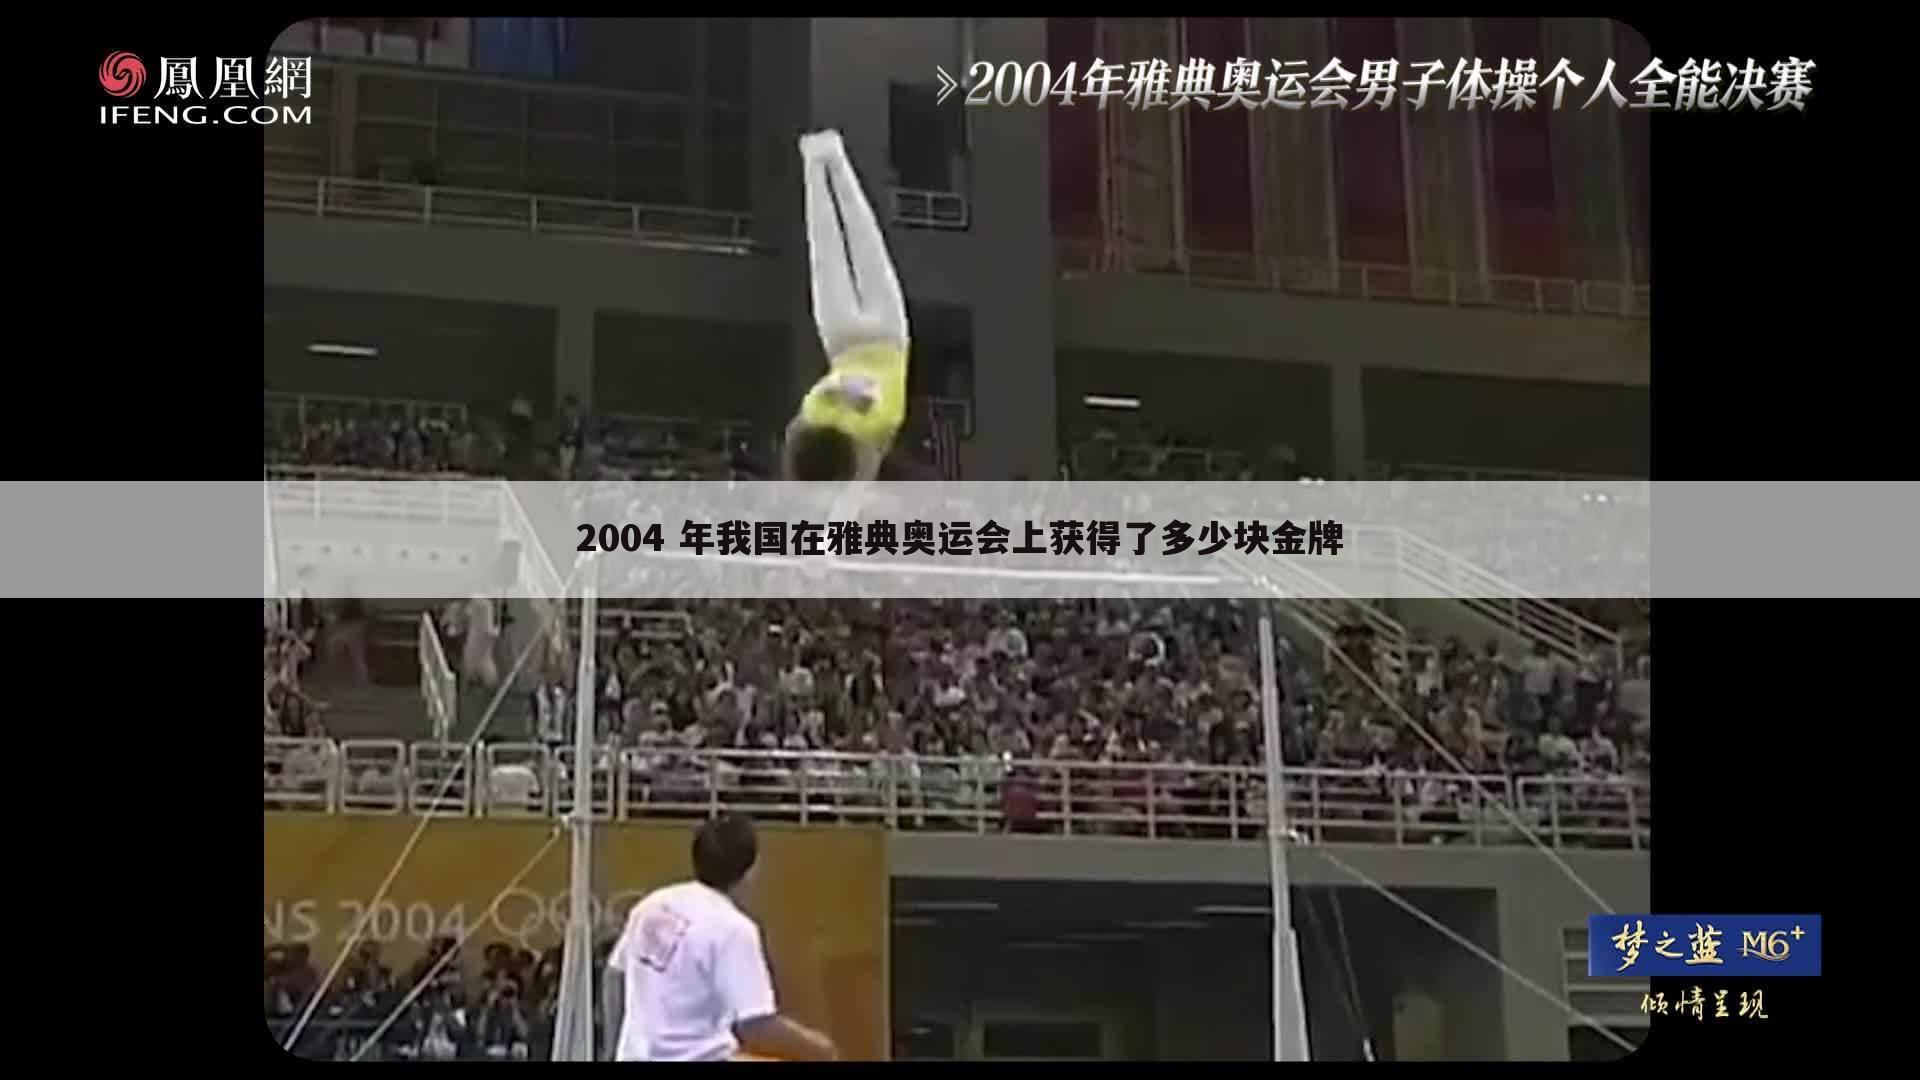 「2004年雅典奥运会中国获得多少金牌」2004年中国雅典奥运会上获得